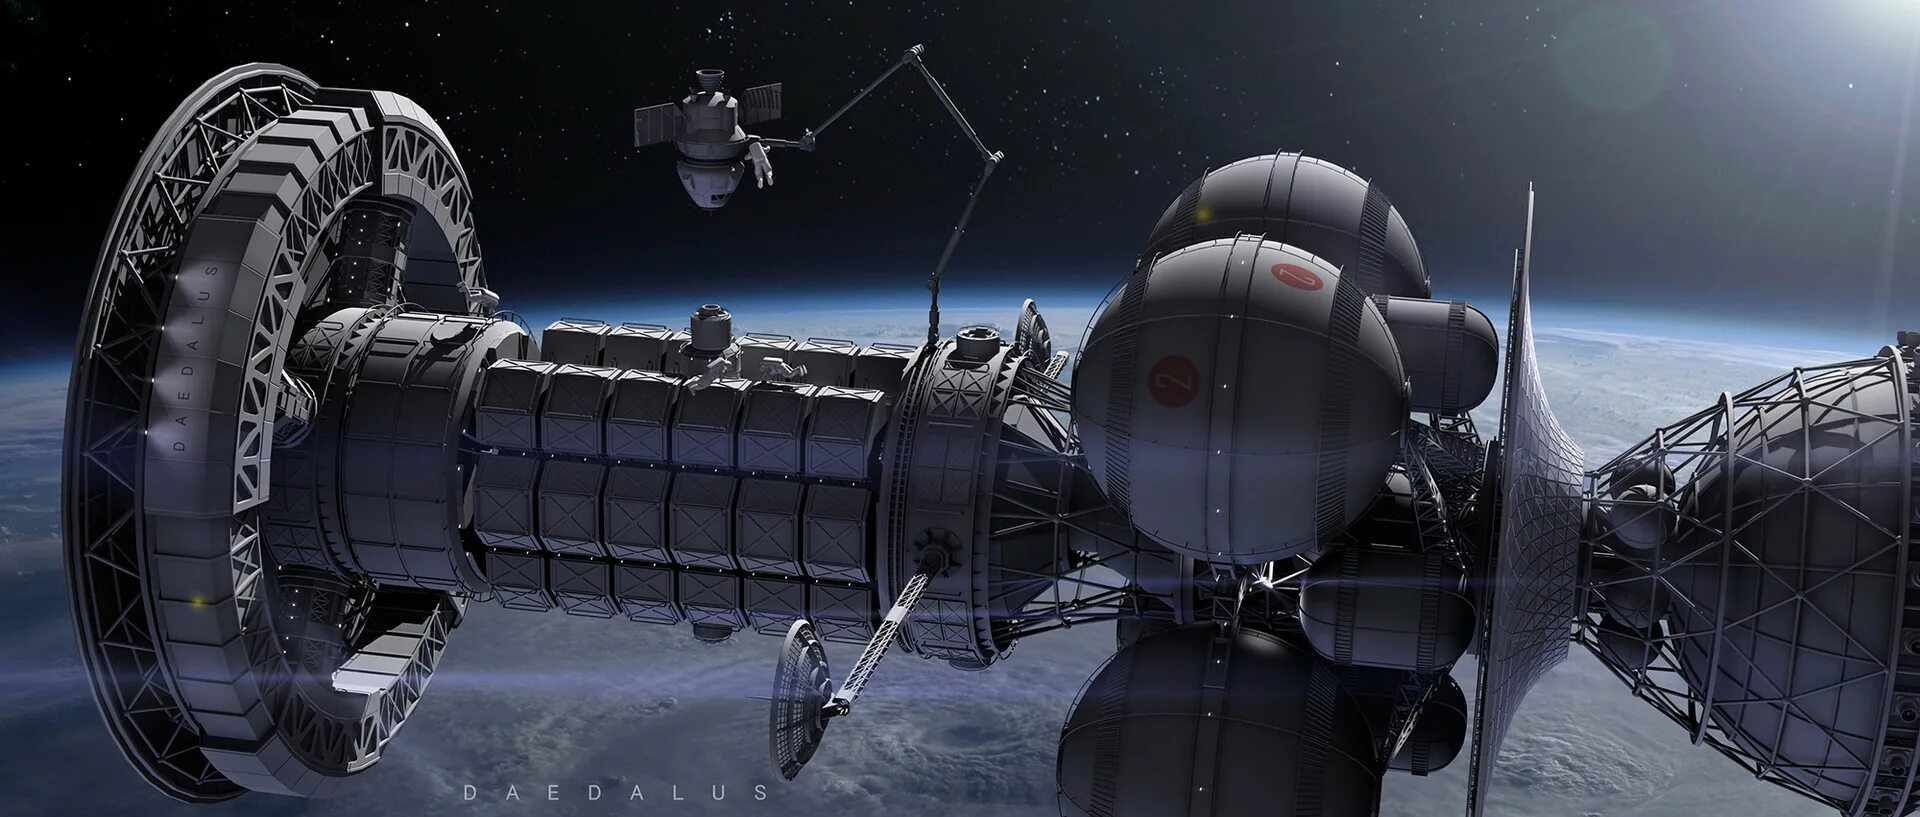 Человек создавший космический корабль. Орион Интерстеллар космический корабль. Проект Дедал космический корабль. Межзвездный корабль Дедал. Проект Daedalus межзвёздный корабль.